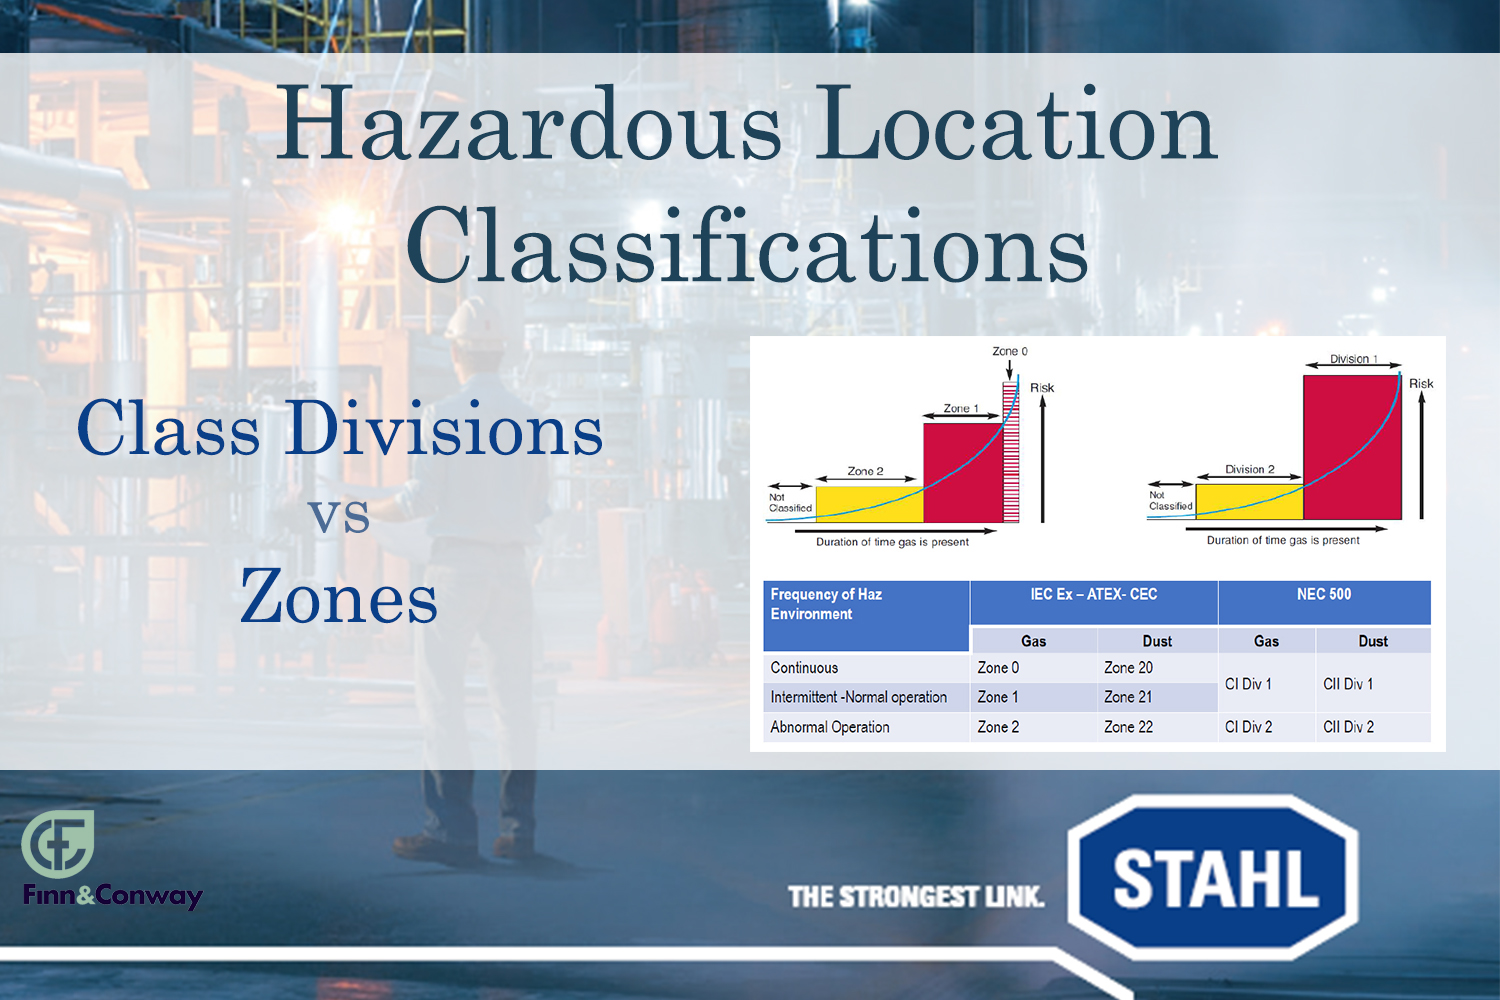 Class/Division vs Zones in Hazardous Locations